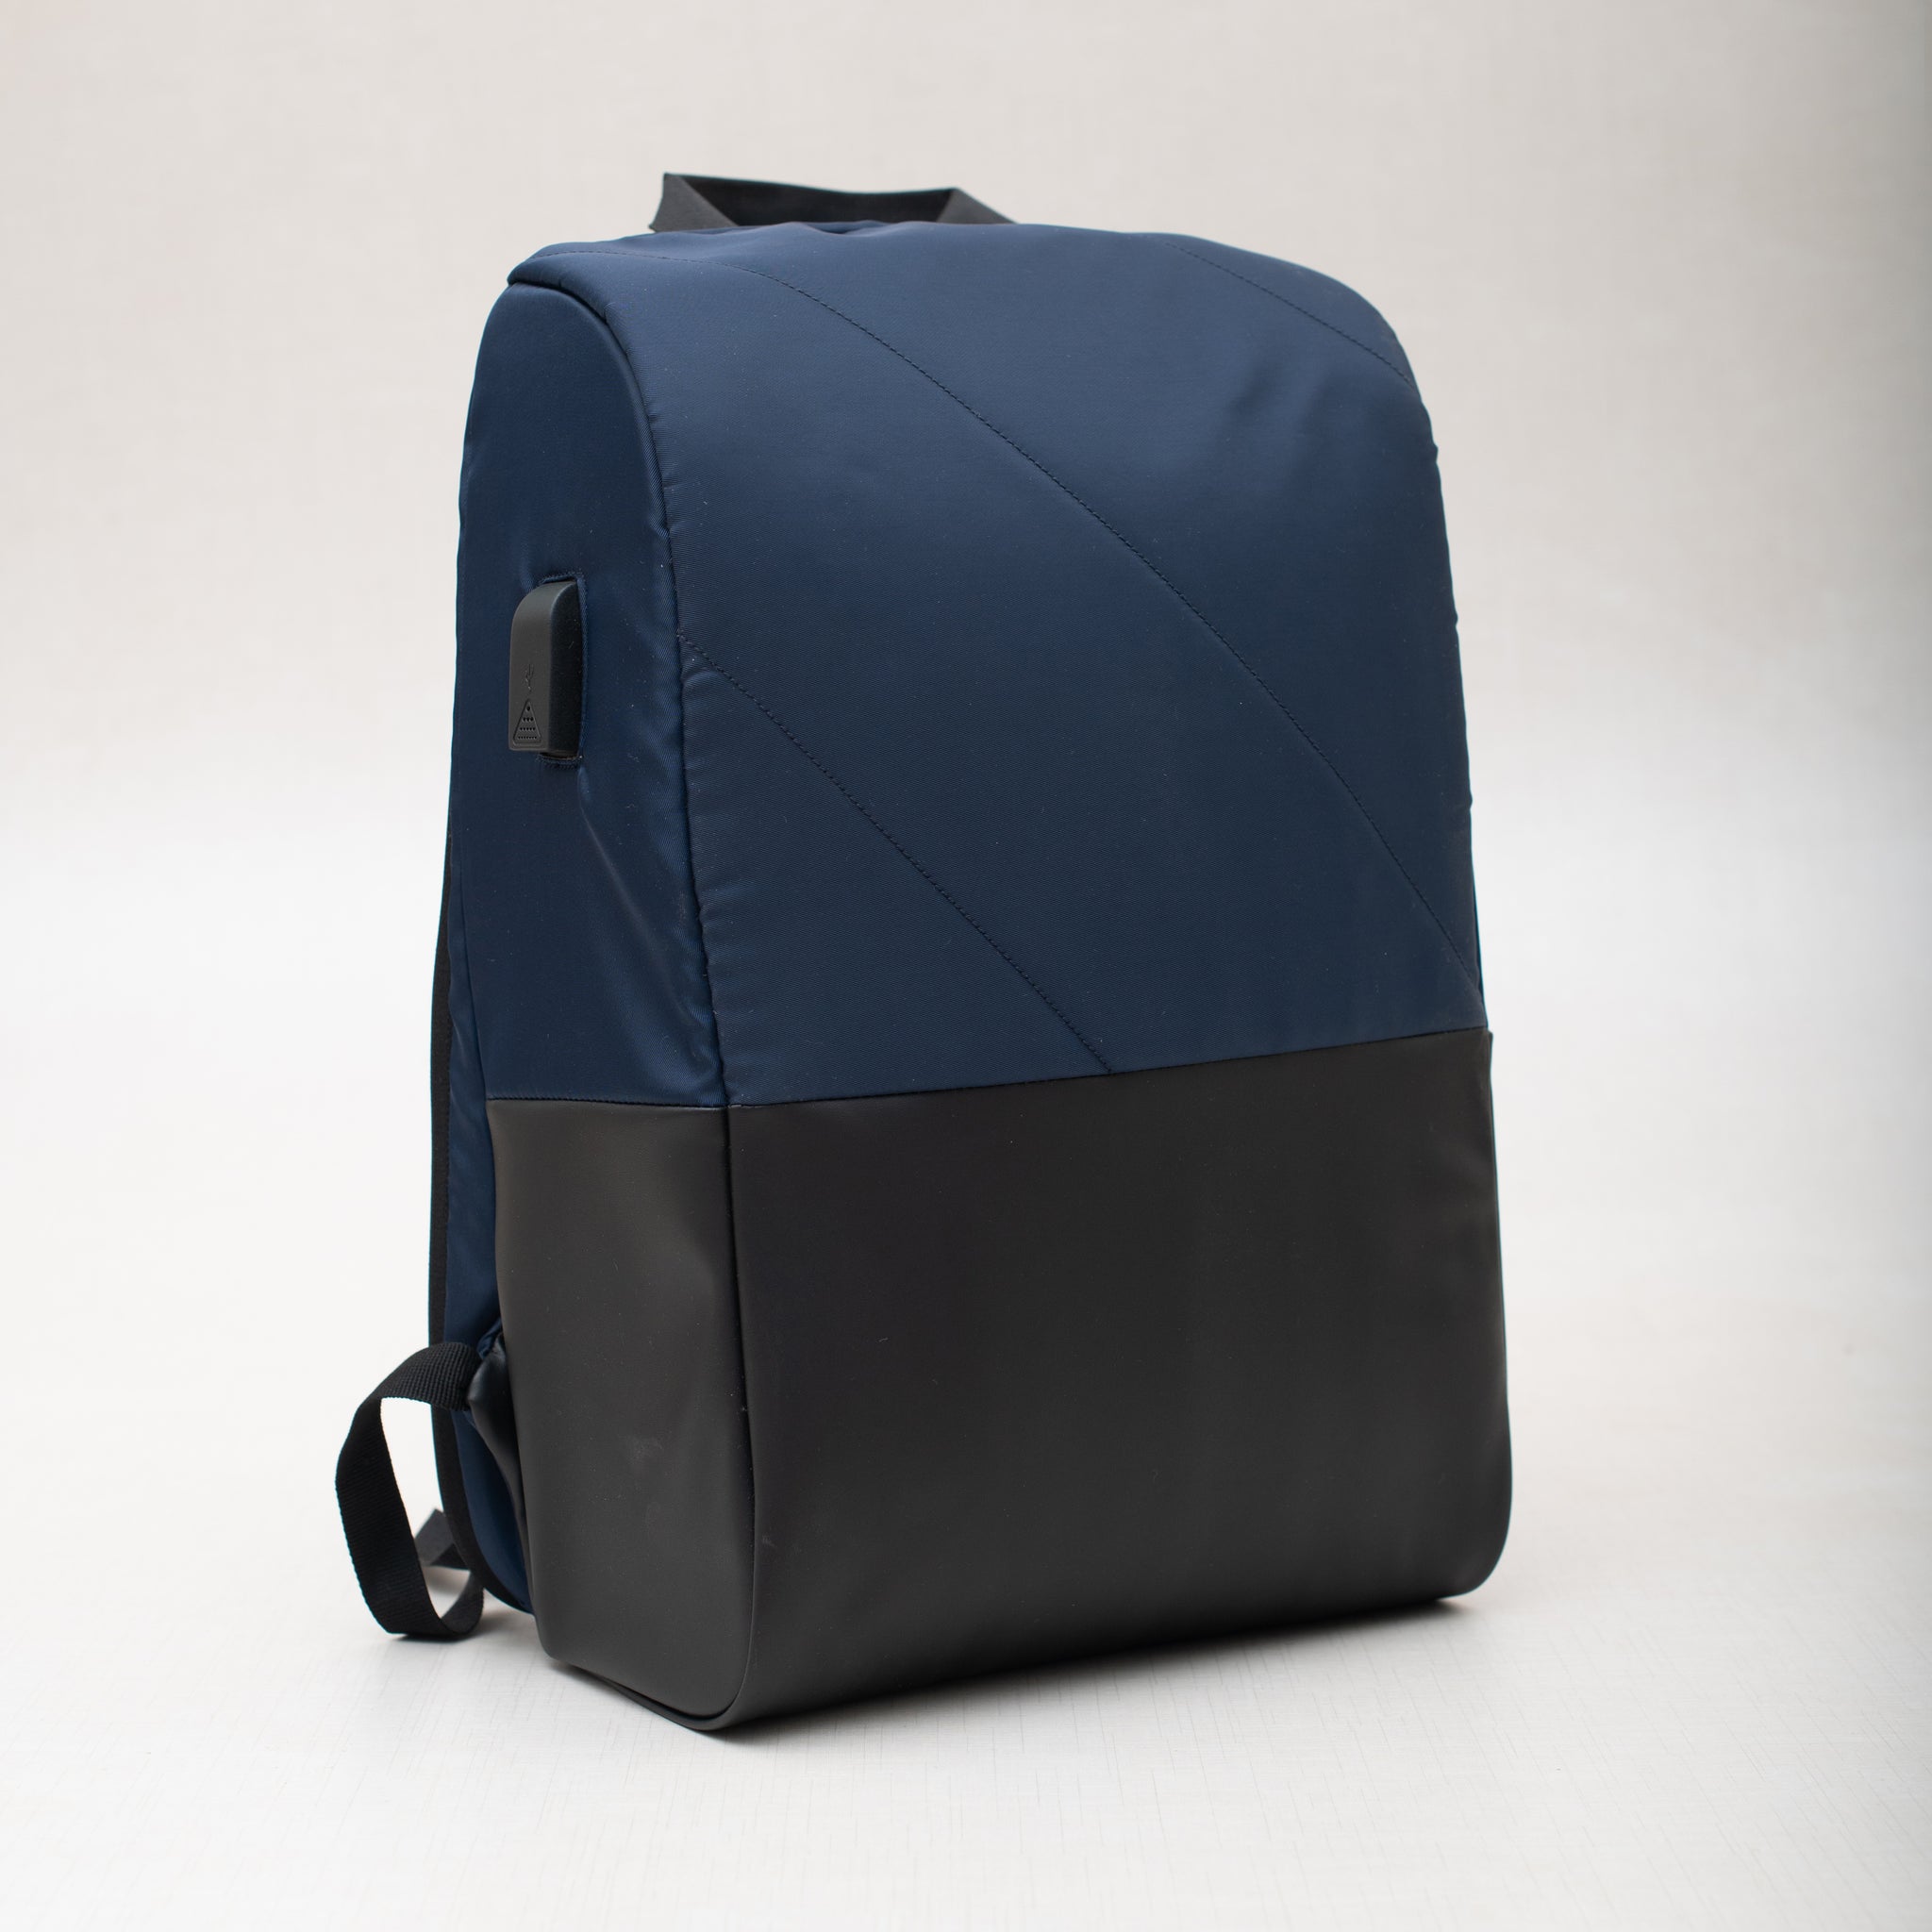 Oblique Raven Laptop Antitheft Backpack: 1N